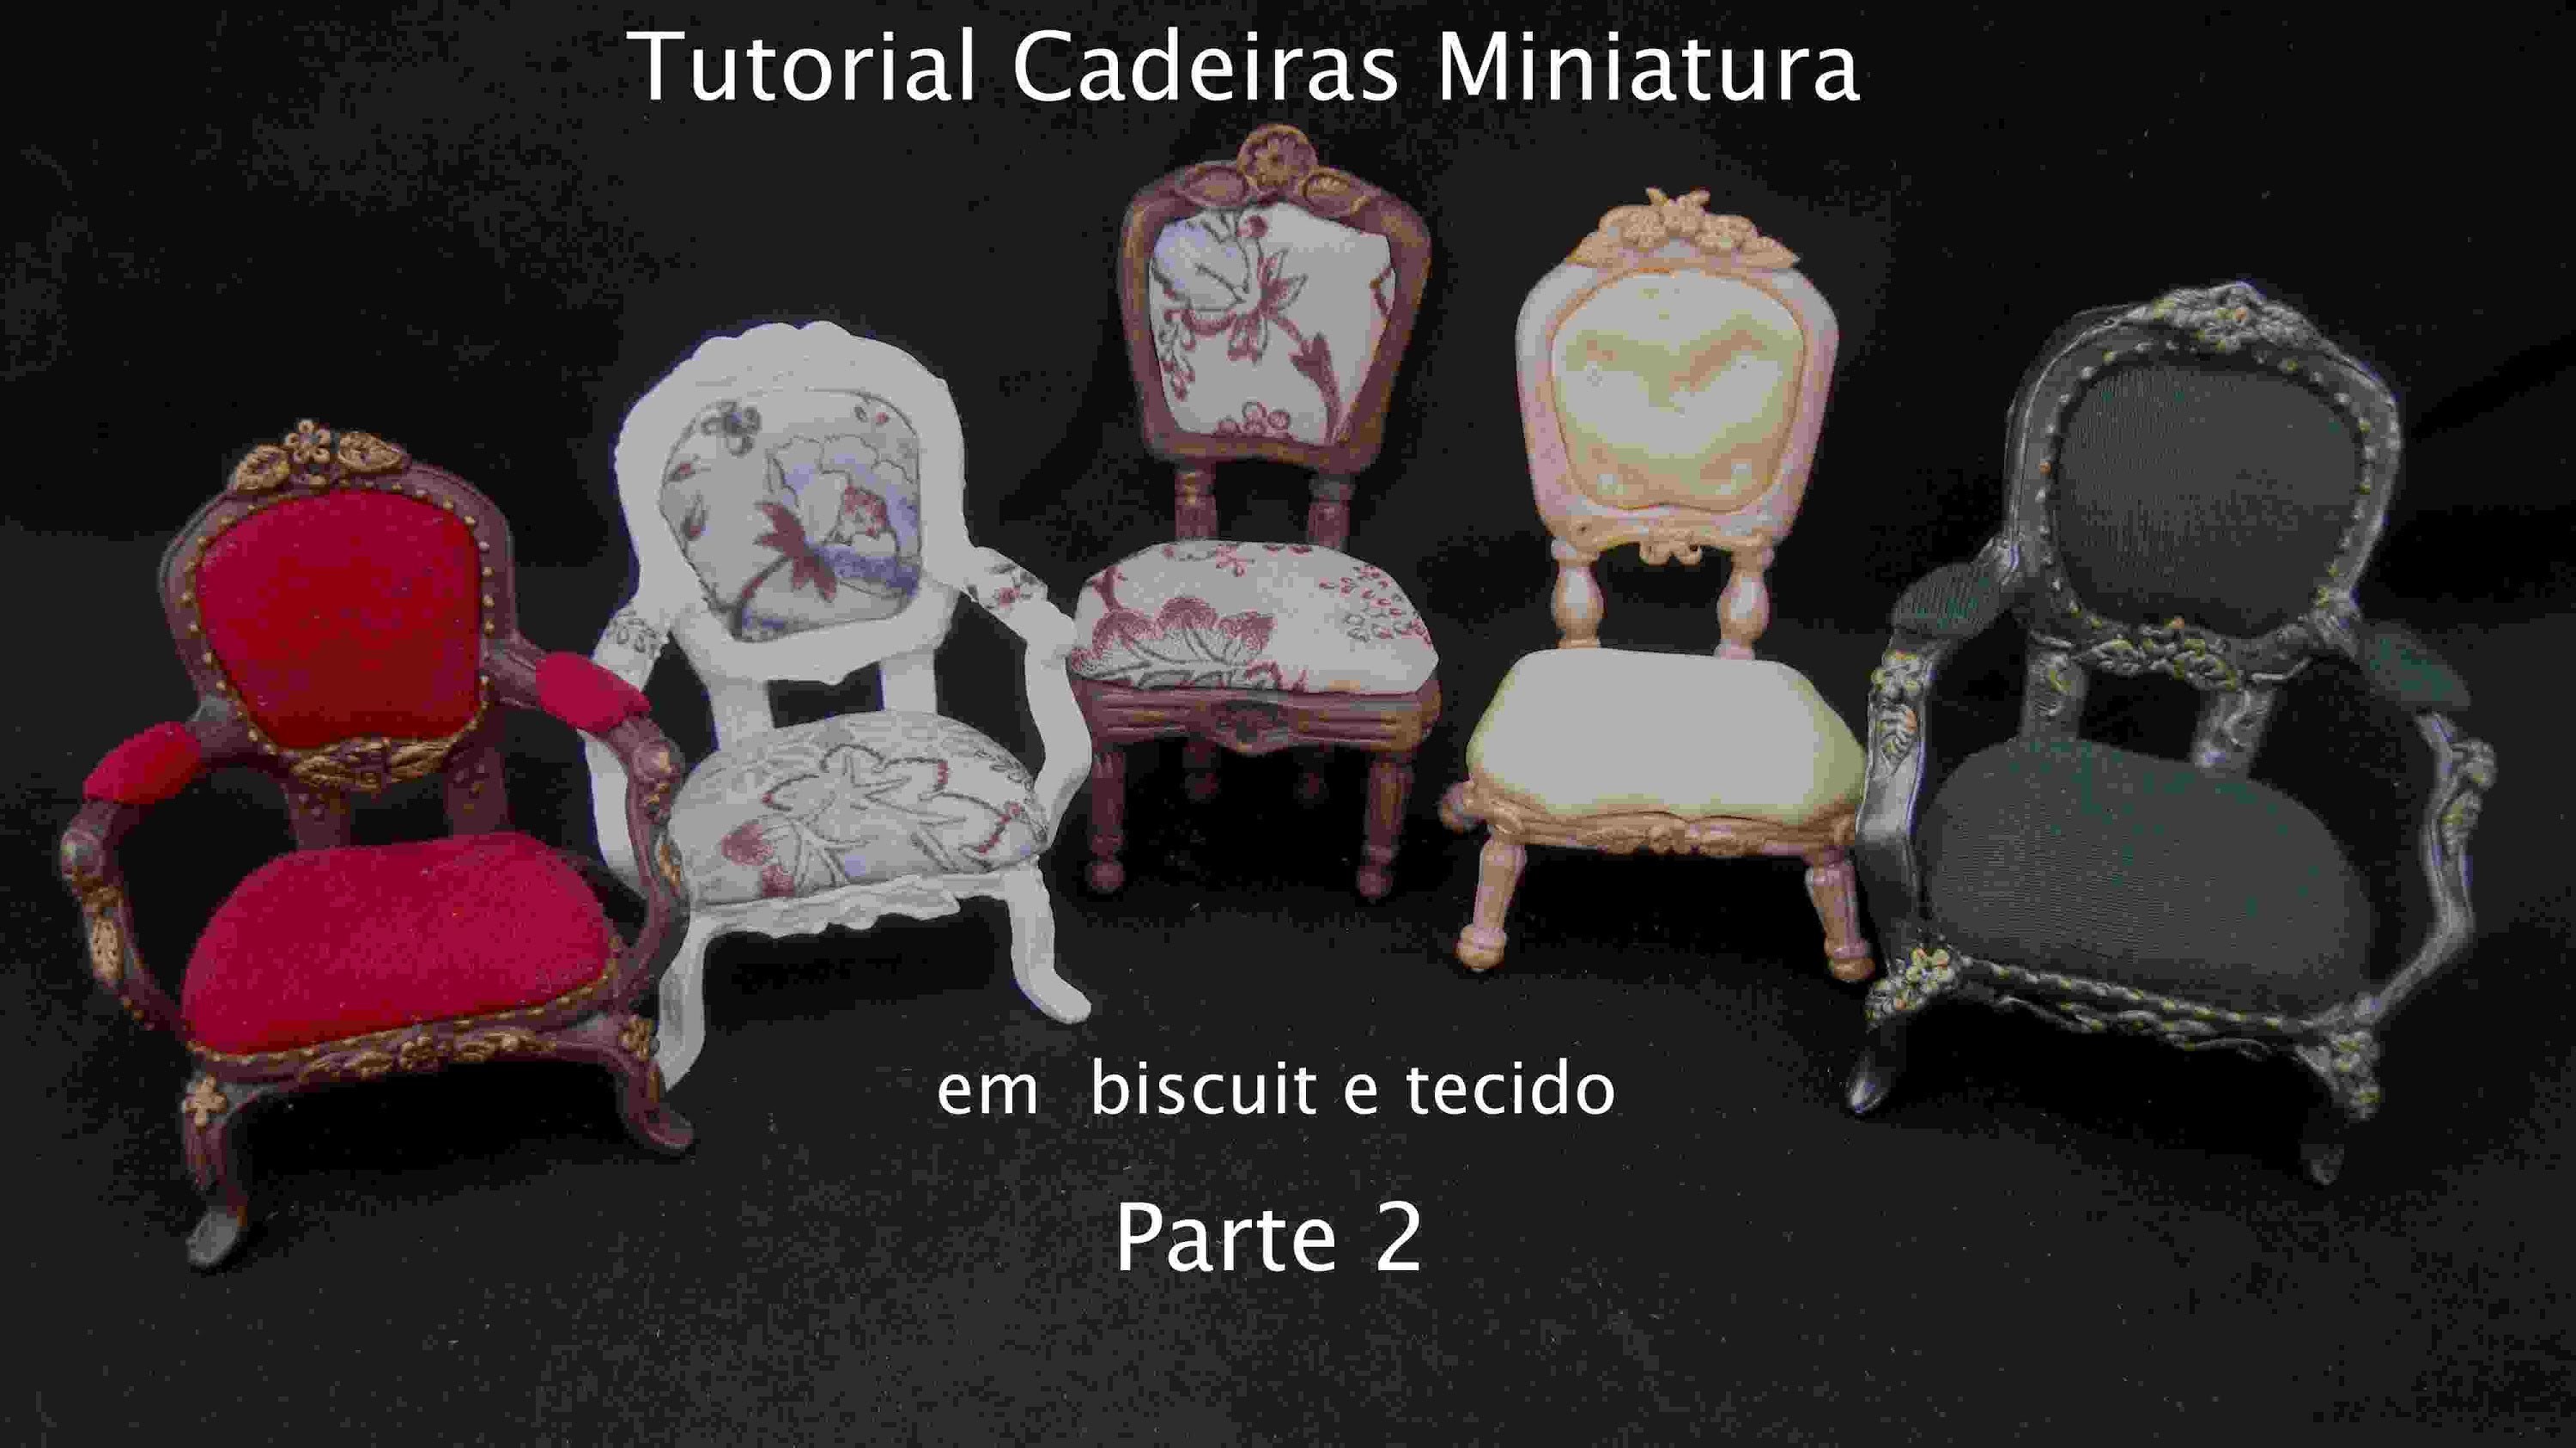 Cadeira miniatura em biscuit e tecido- parte 2